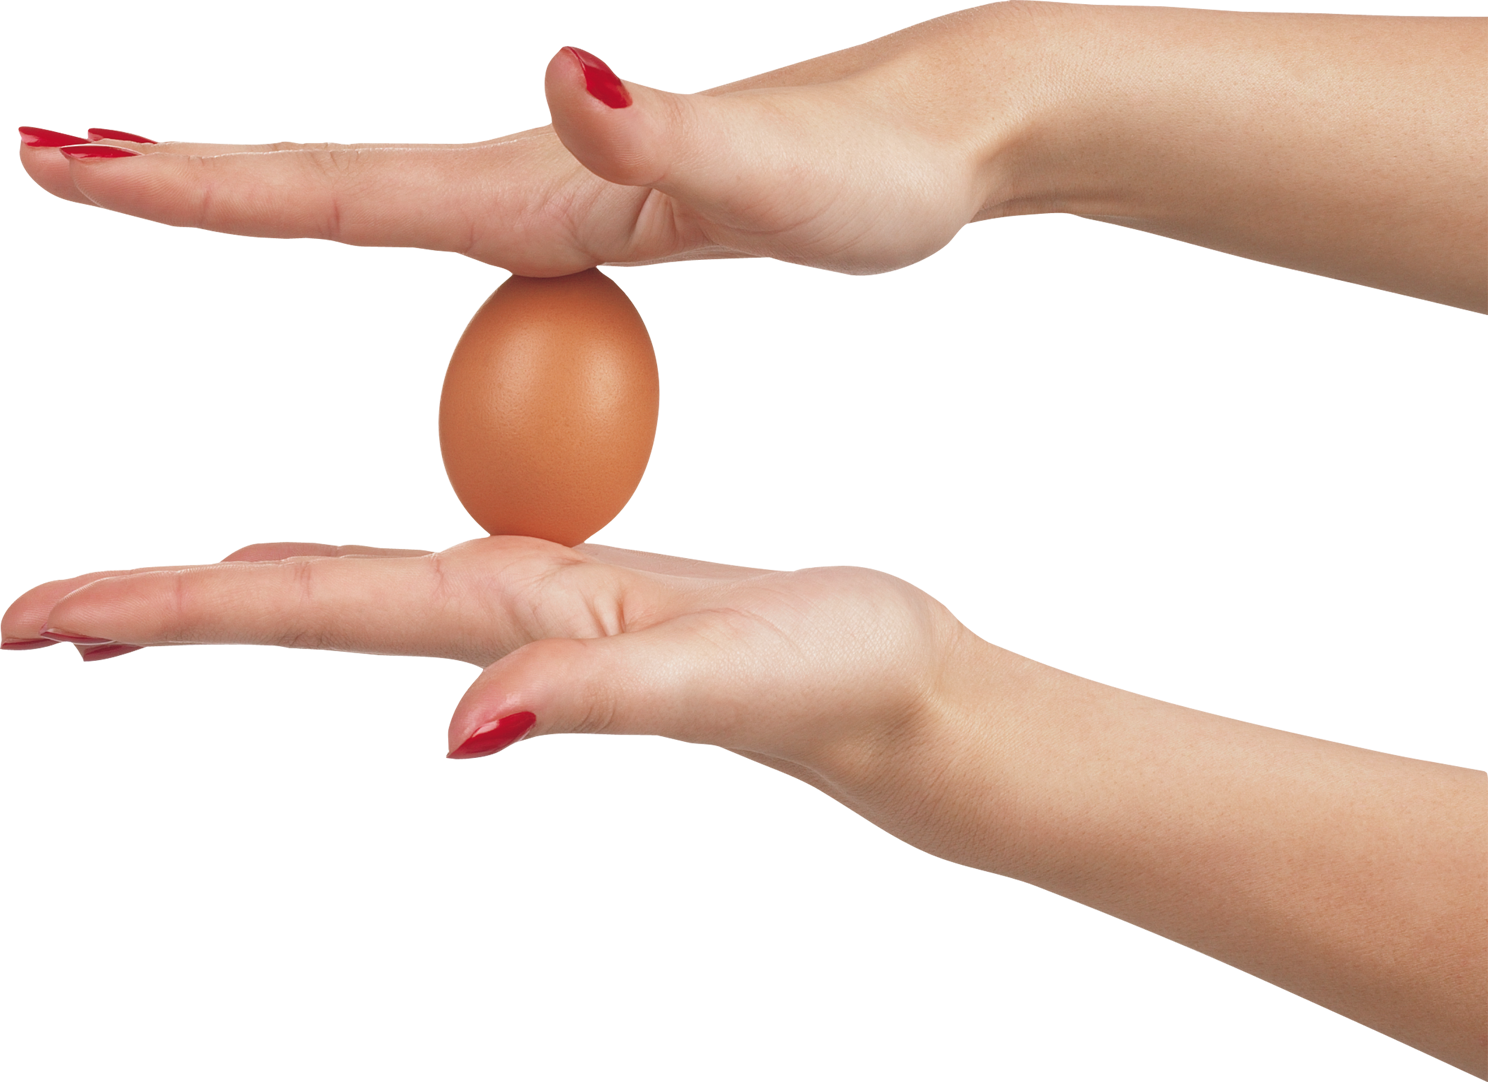 Яйцо в руке